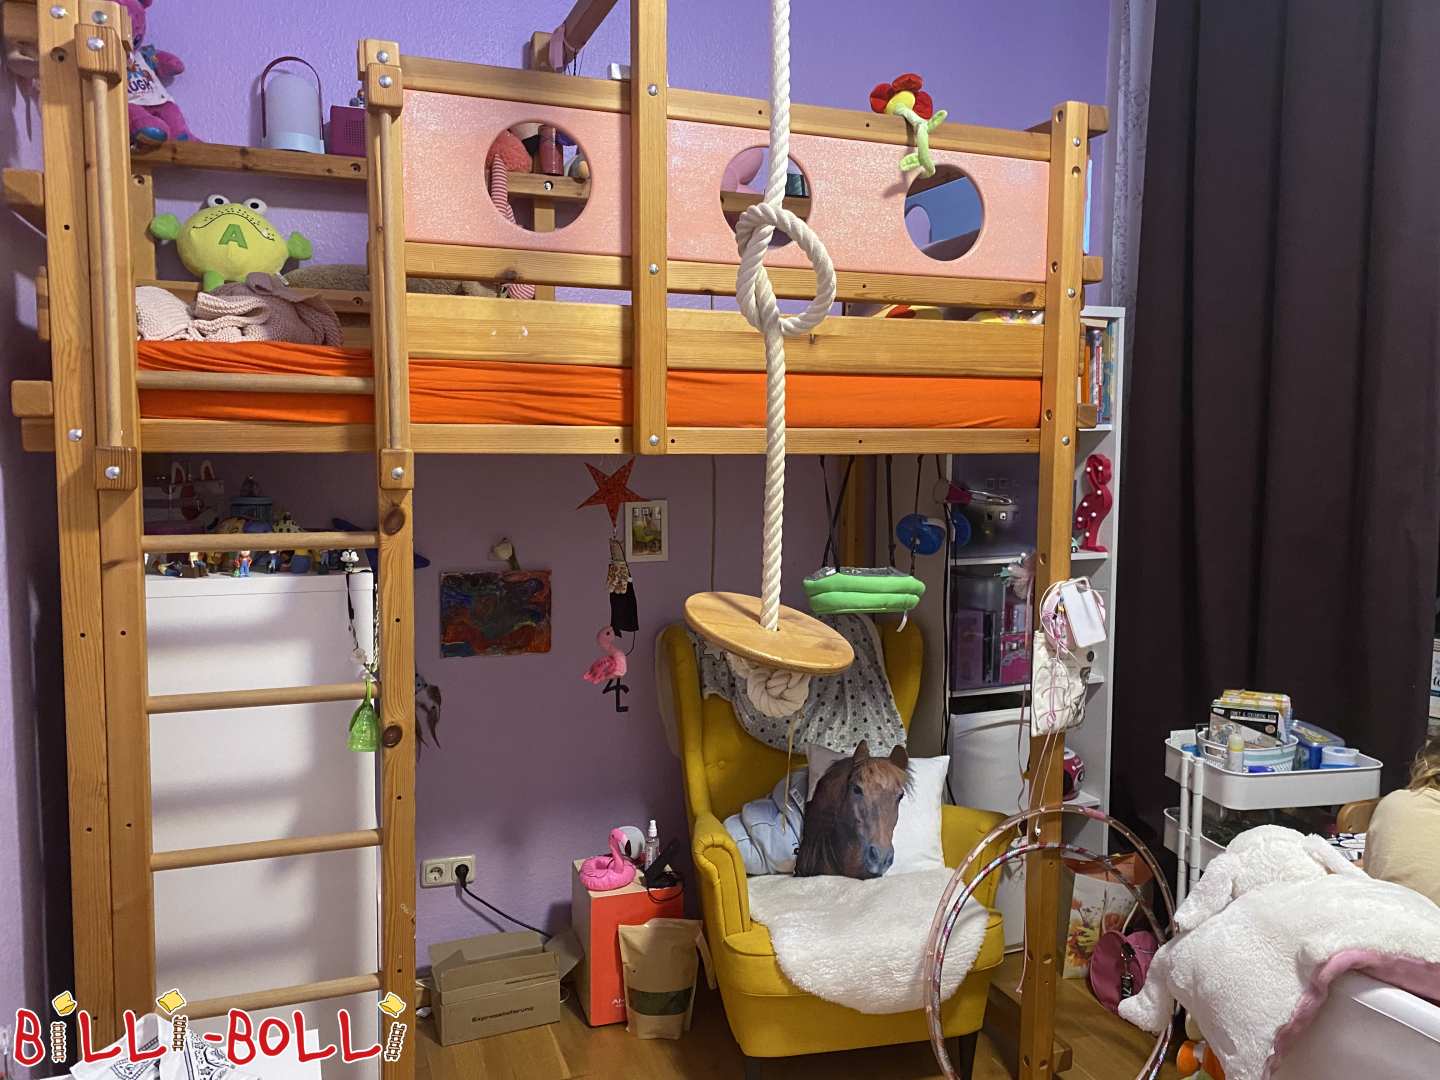 Gojenje podstrešne postelje / tematske postelje z gugalno ploščo (Category: Podstrešna postelja, ki raste z otrokom used)